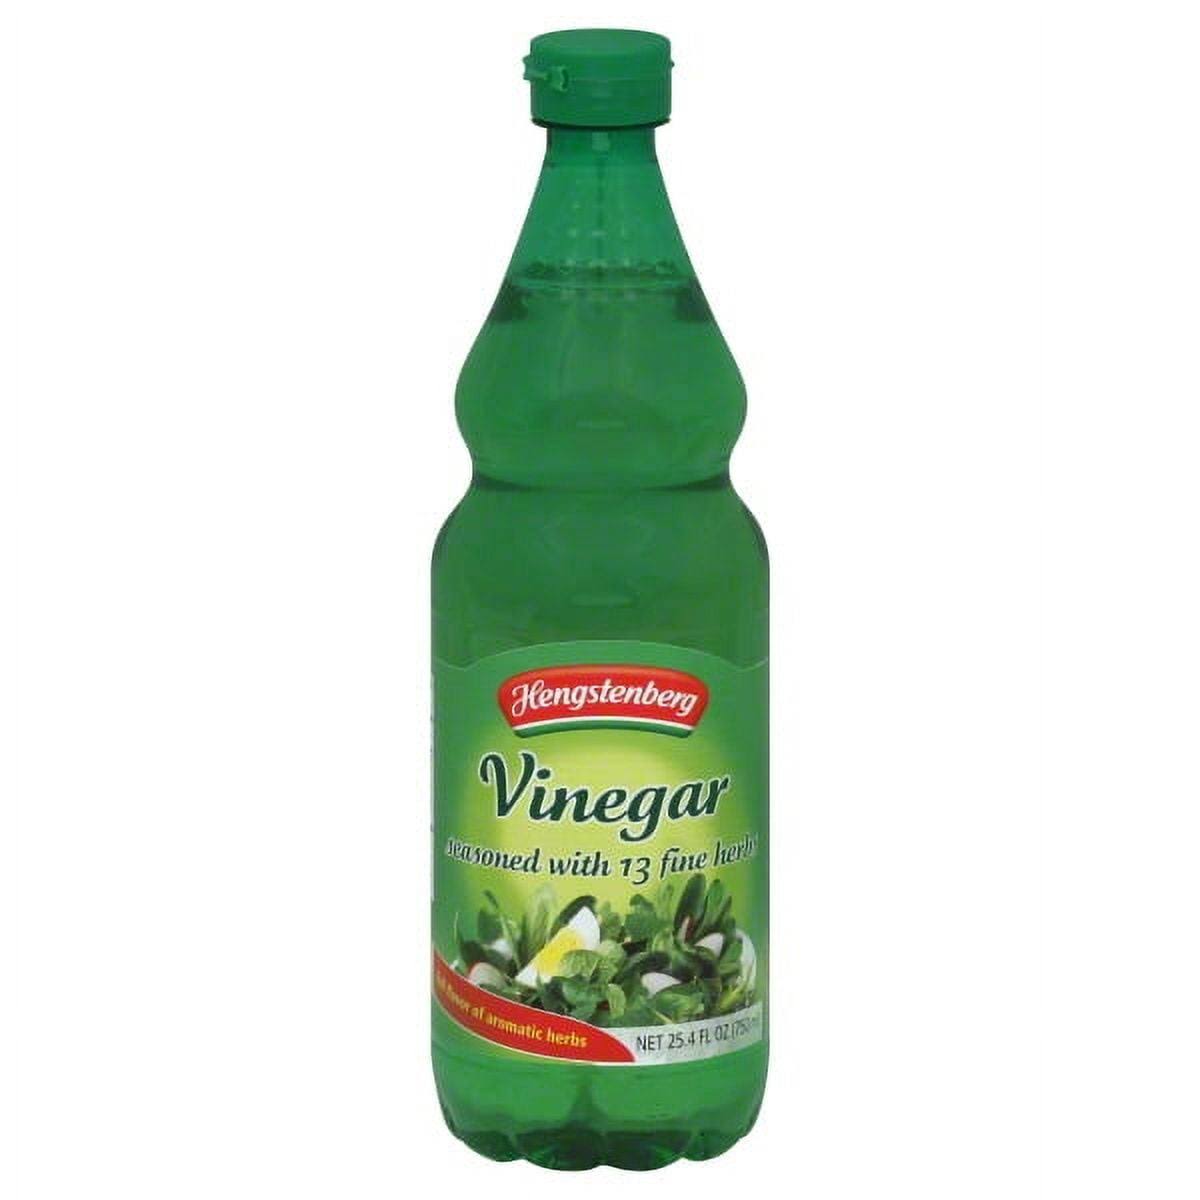 Hengstenberg Seasoned Vinegar